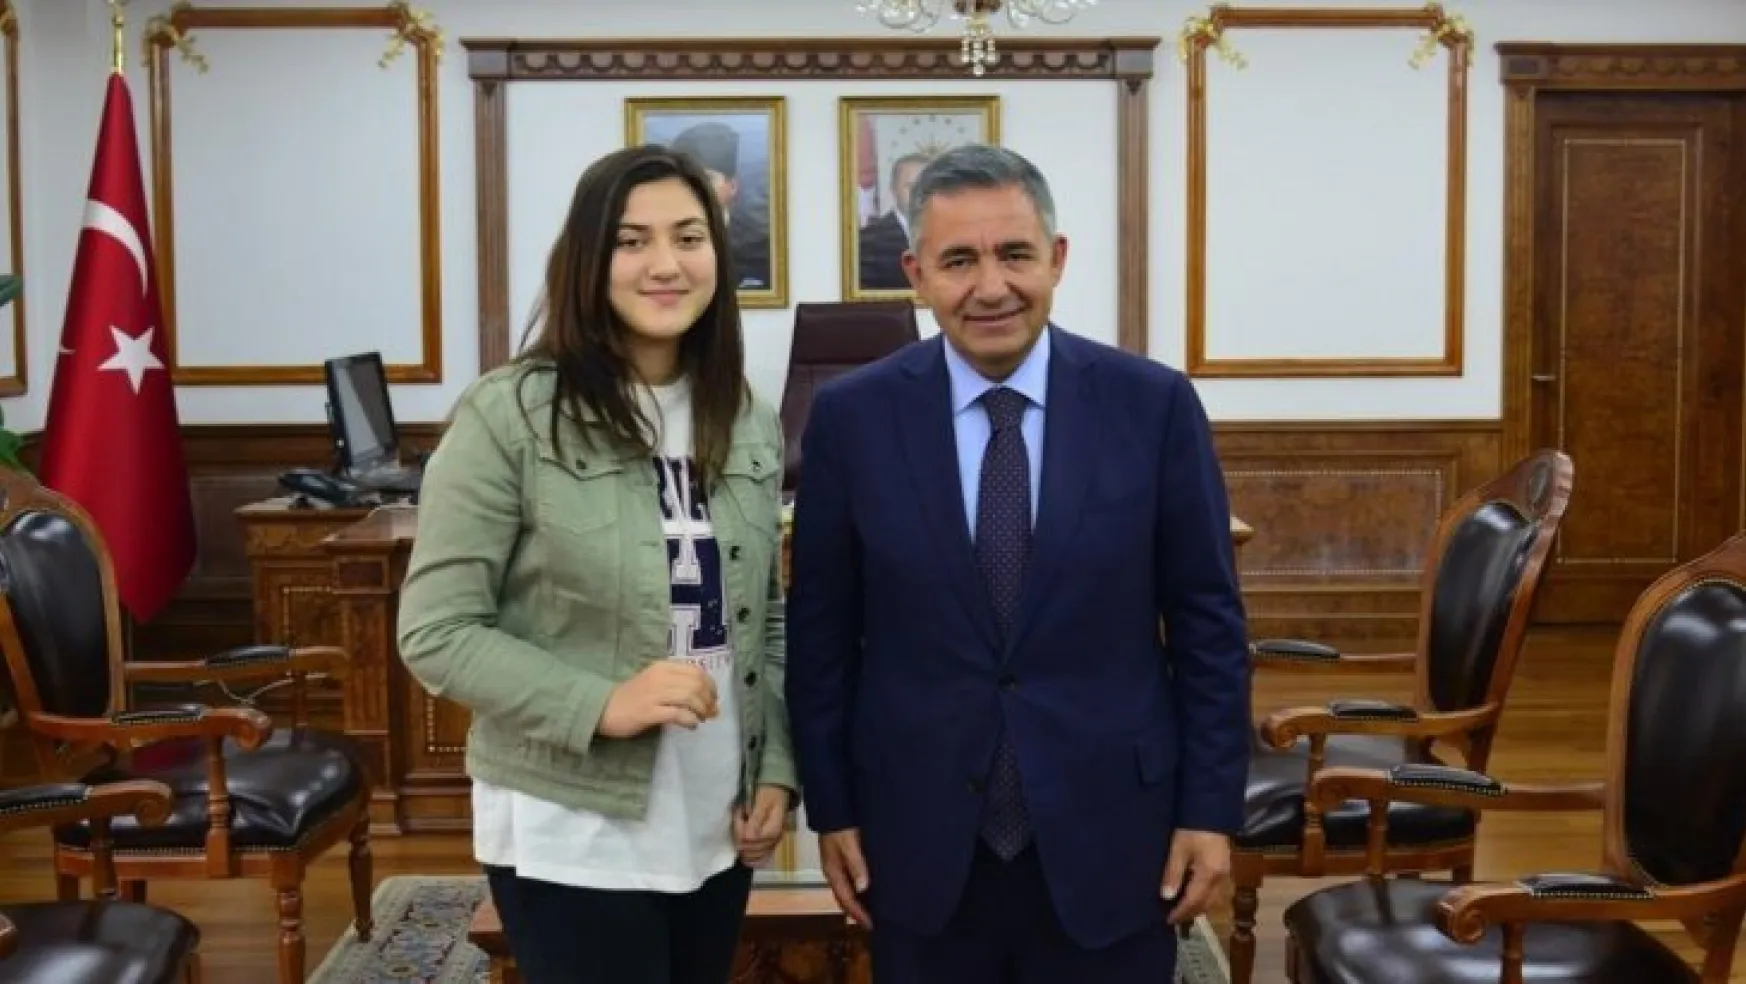 Kırşehir'in LGS birincisi başarısını kitap okumaya ve deneme sınavlarına borçlu